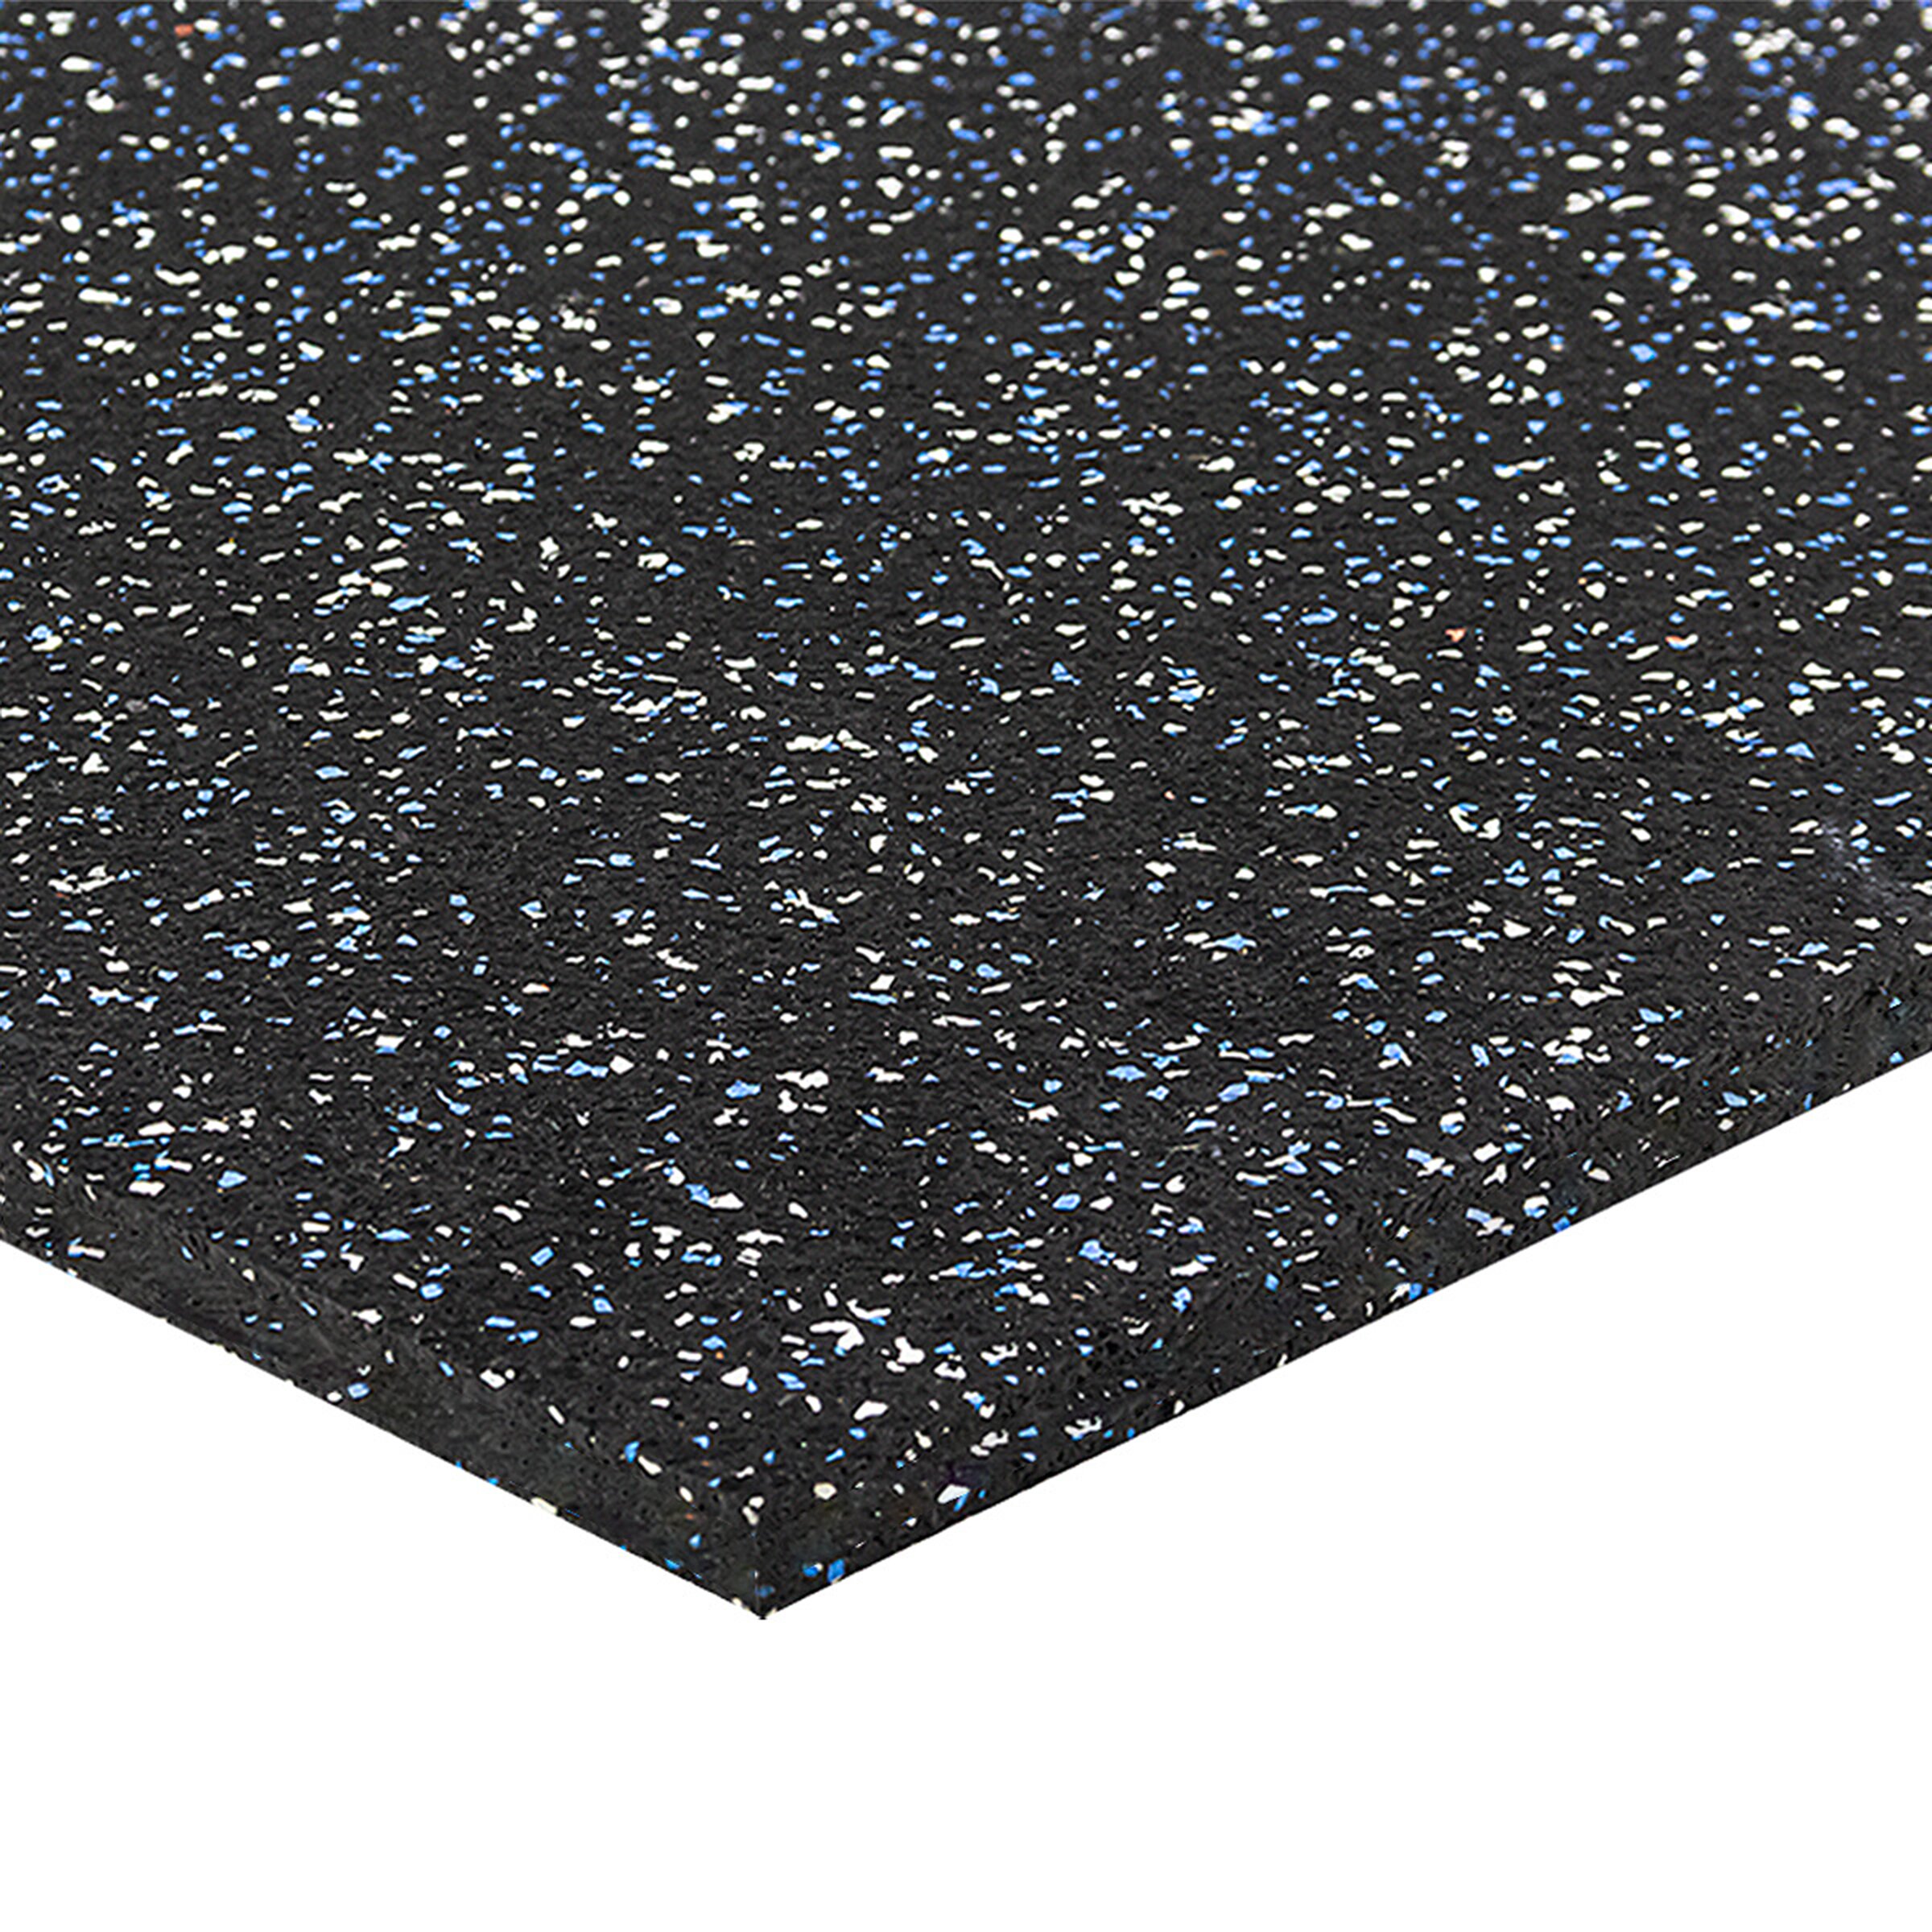 Černo-bílo-modrá gumová puzzle modulová dlažba FLOMA SF1050 FitFlo - délka 100 cm, šířka 100 cm, výška 1,6 cm